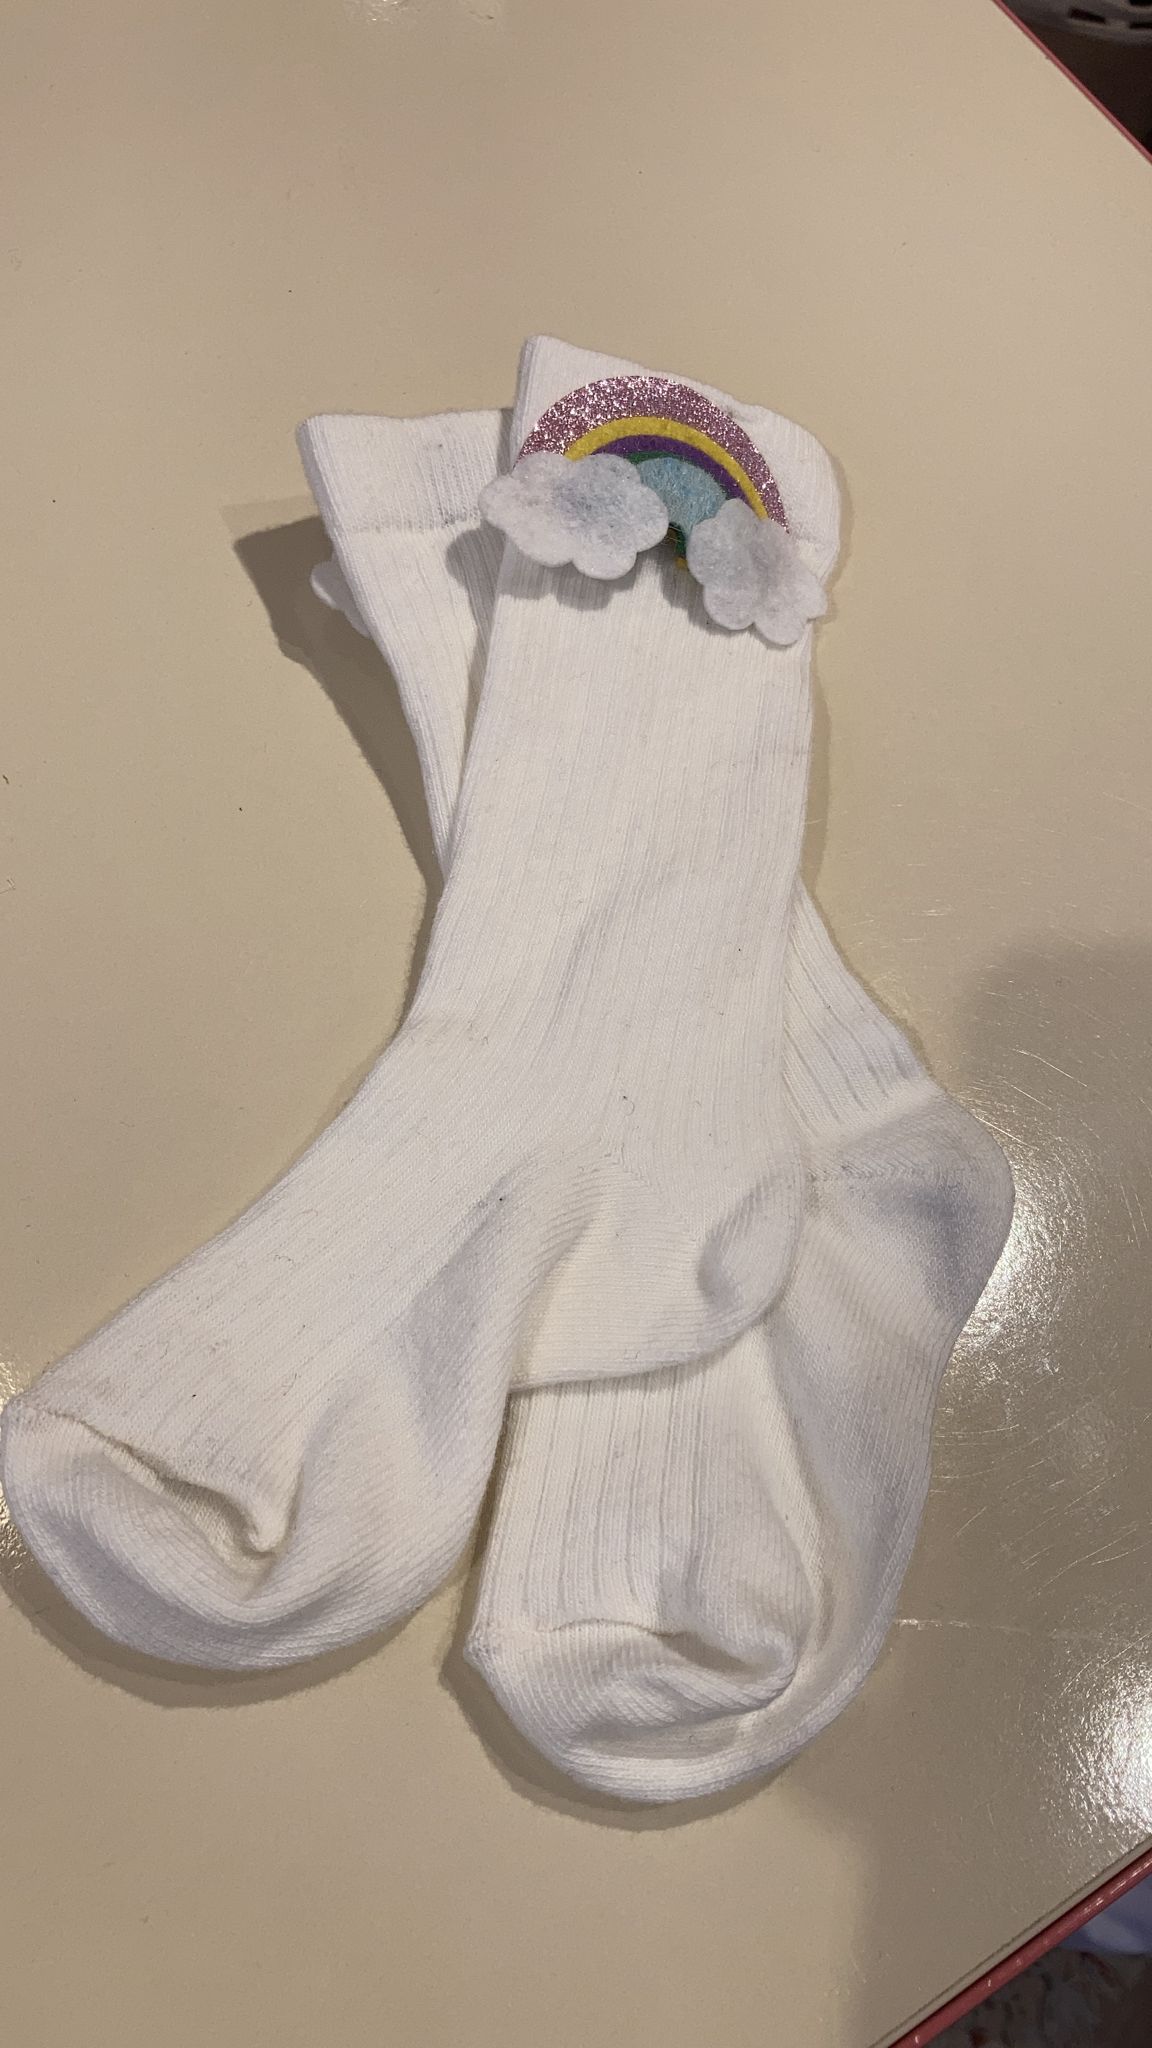 Gökkuşağı Aksesuarlı Fitilli Dizaltı Çorap Beyaz